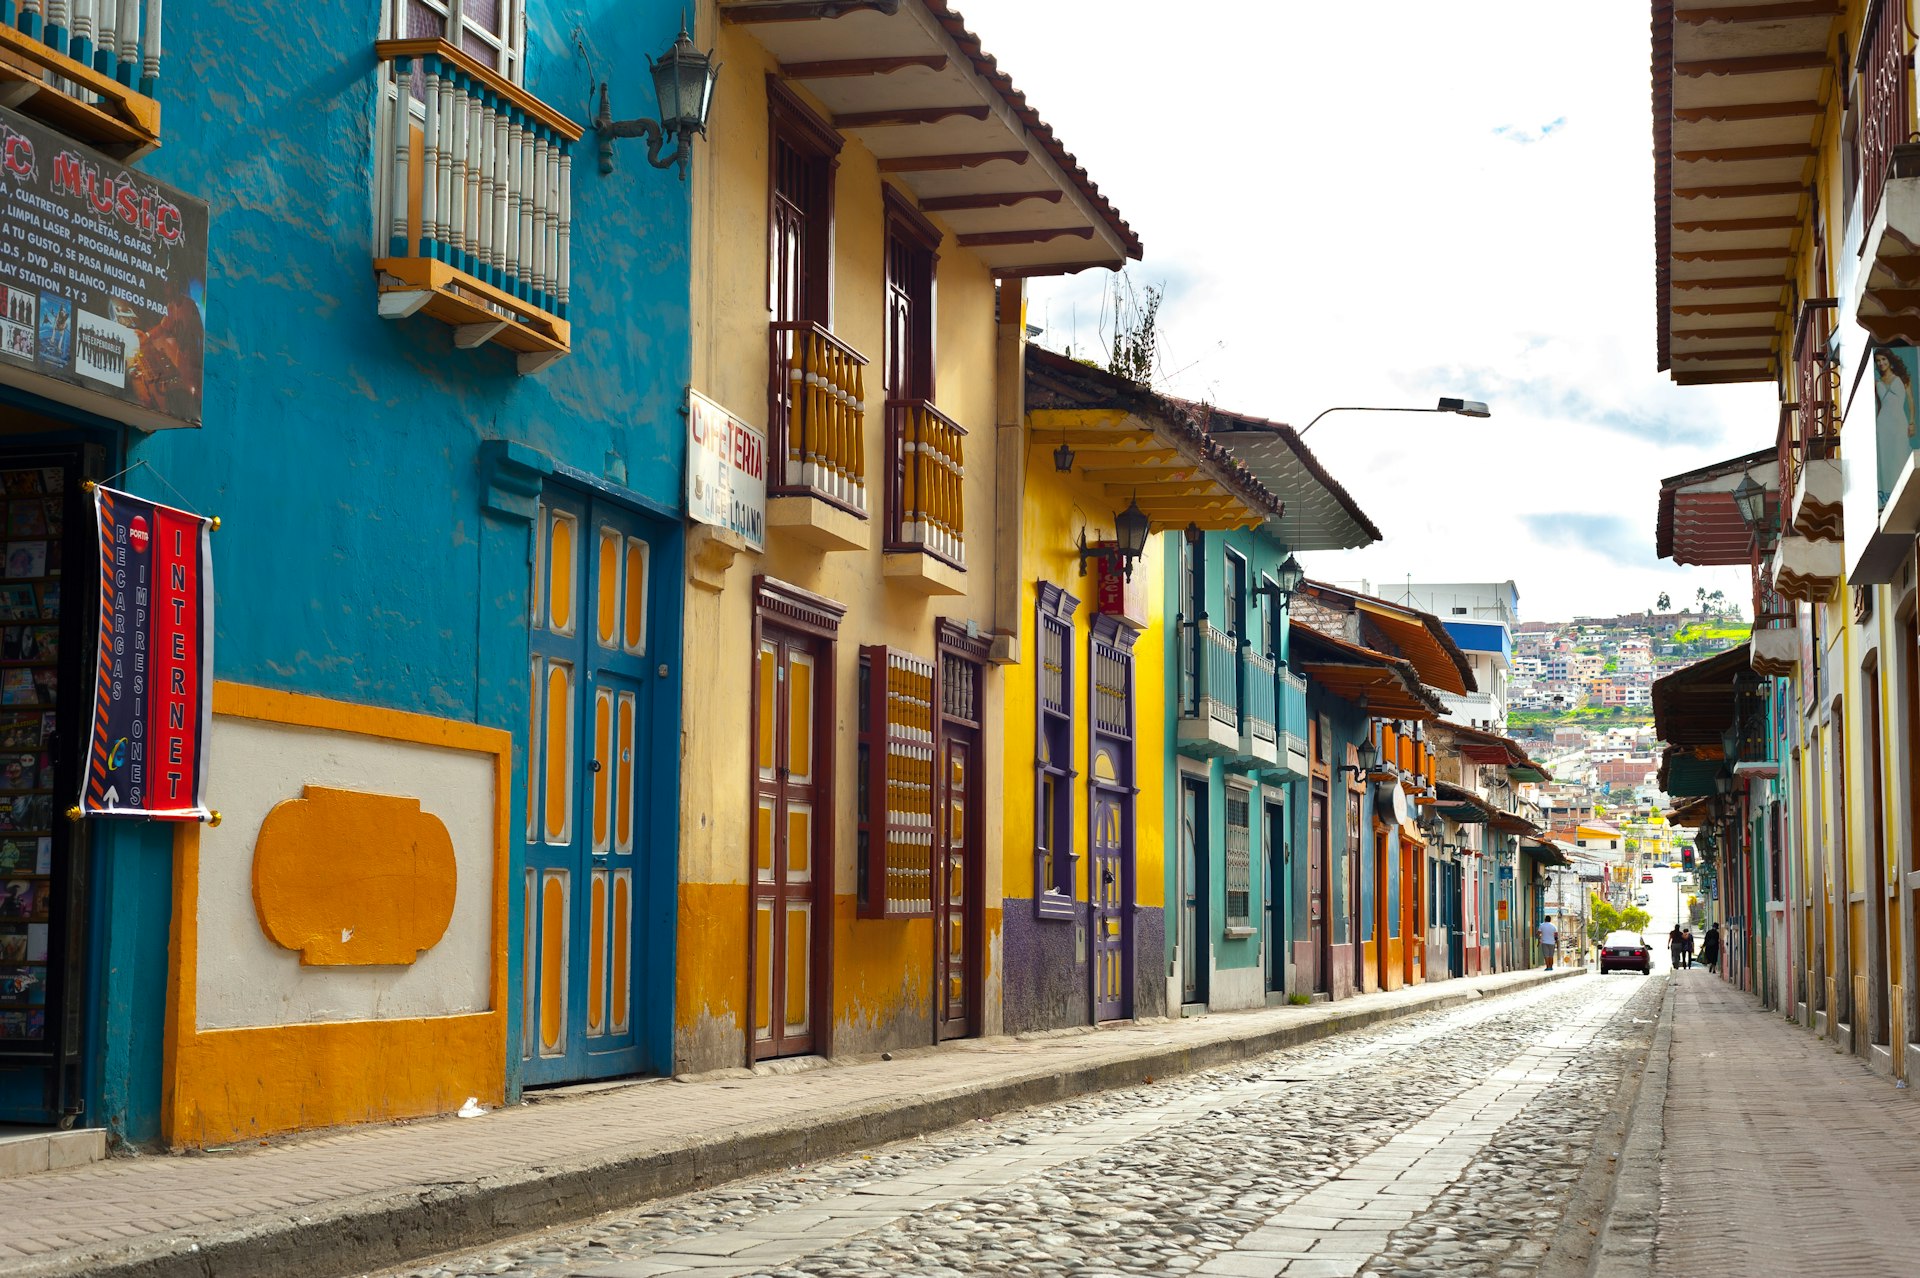 Uma fileira de casas coloridas e vitrines em uma rua de paralelepípedos